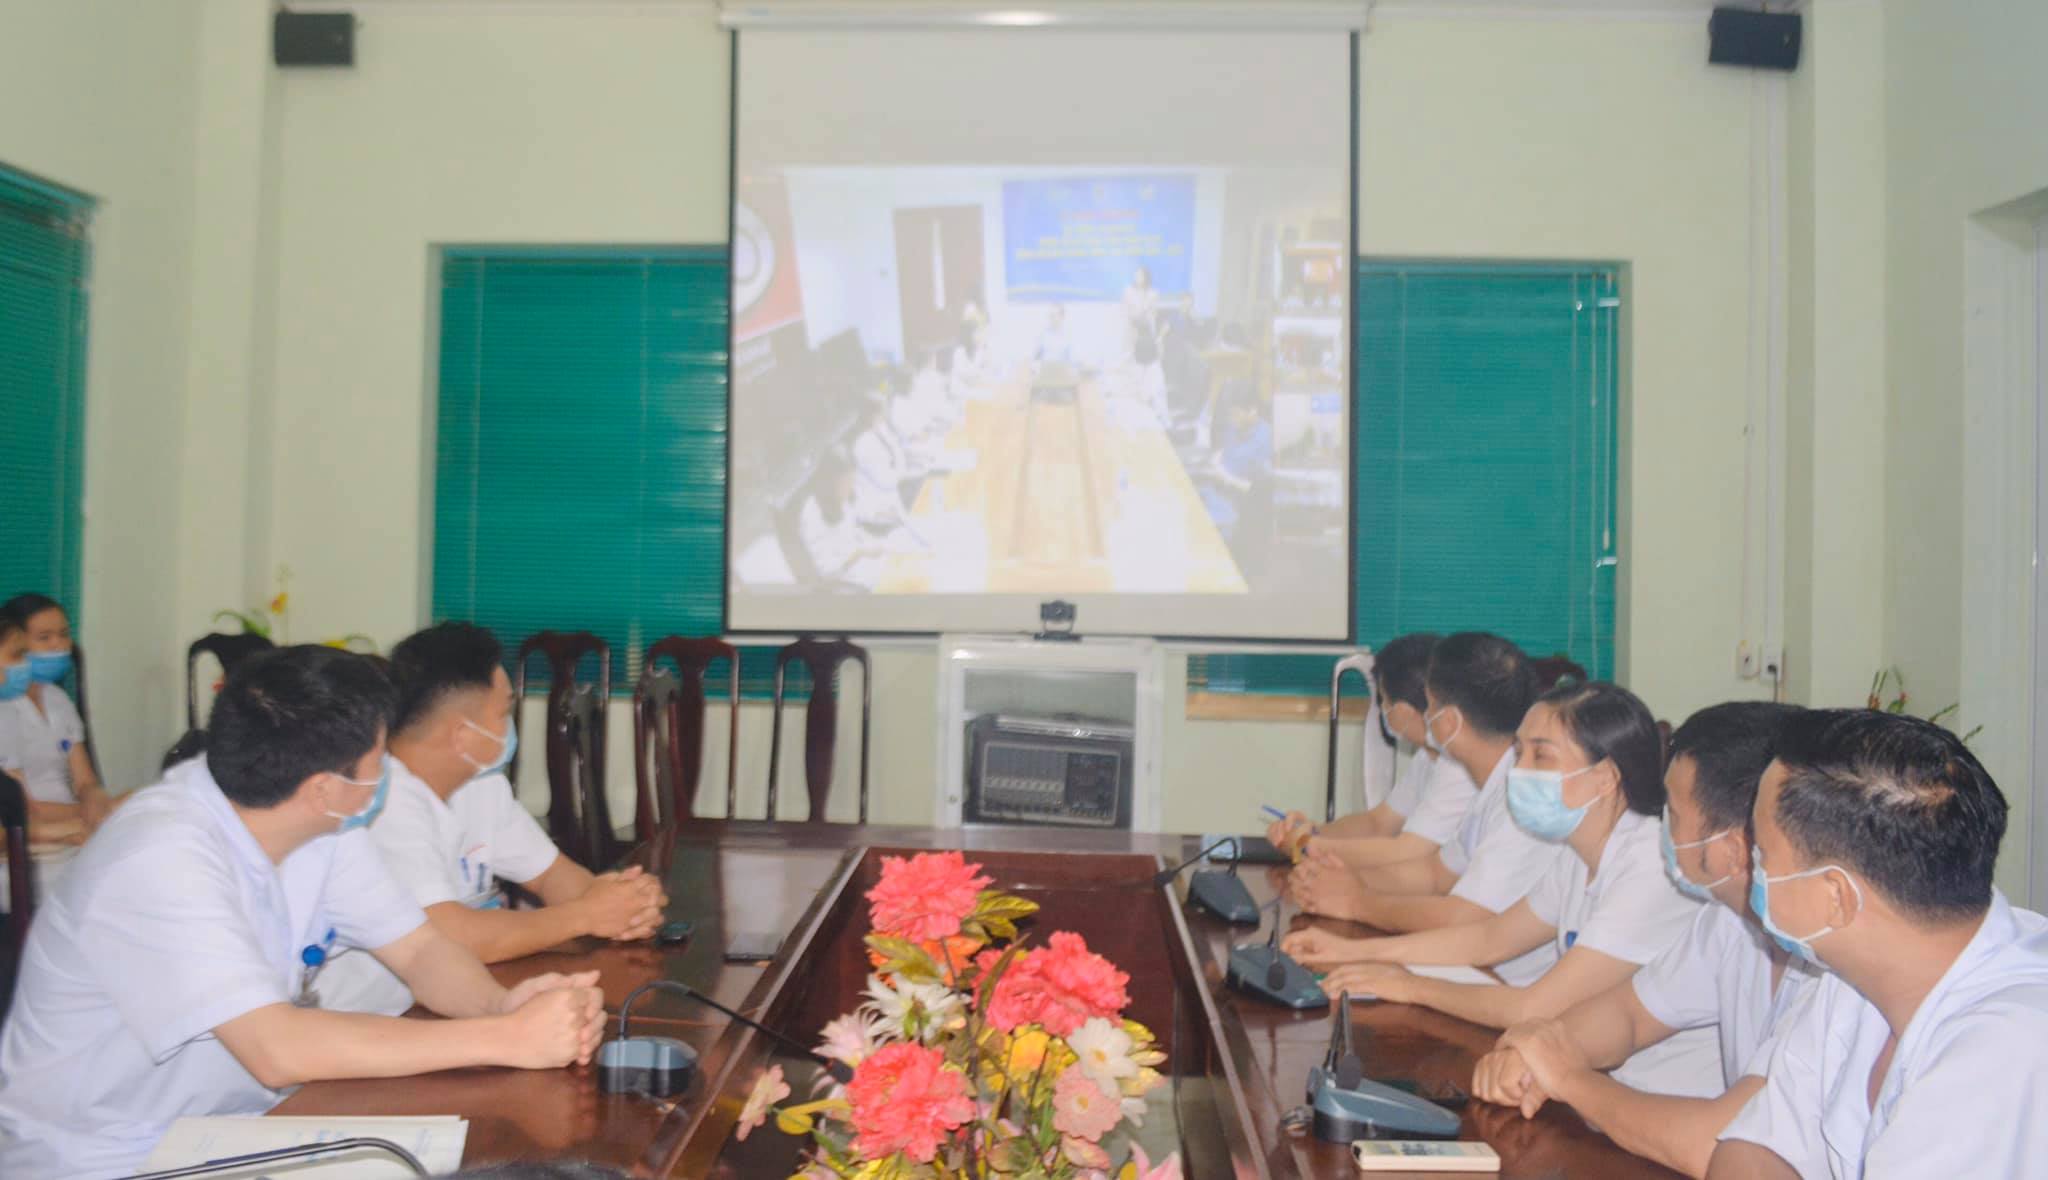 
Y, bác sĩ bệnh viện đa khoa huyện Quang Bình hội chẩn trực tuyến với các chuyên gia bệnh viện Nhi Trung ương